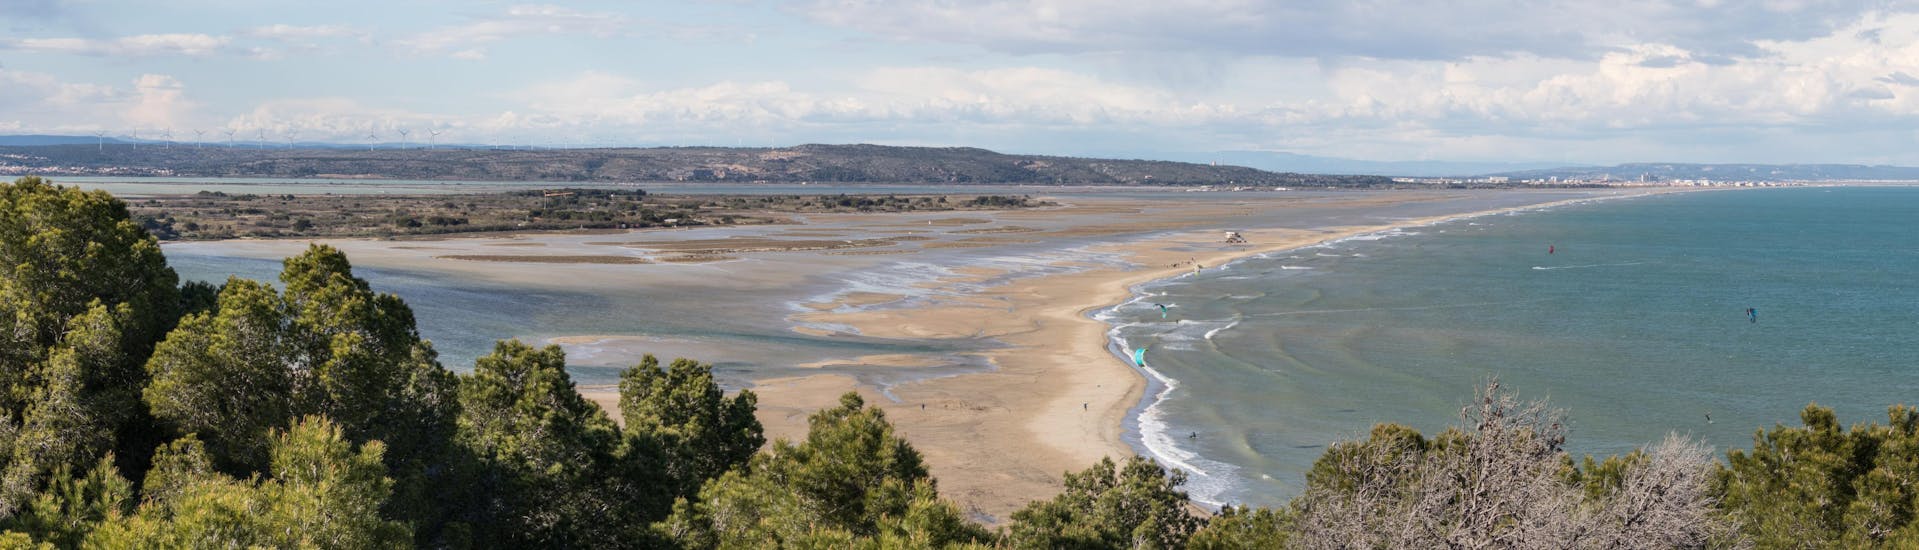 Des amateurs de kitesurf s'entraînent sur l'une des plages de Leucate, l'une des destinations prisées dans le sud de la France.